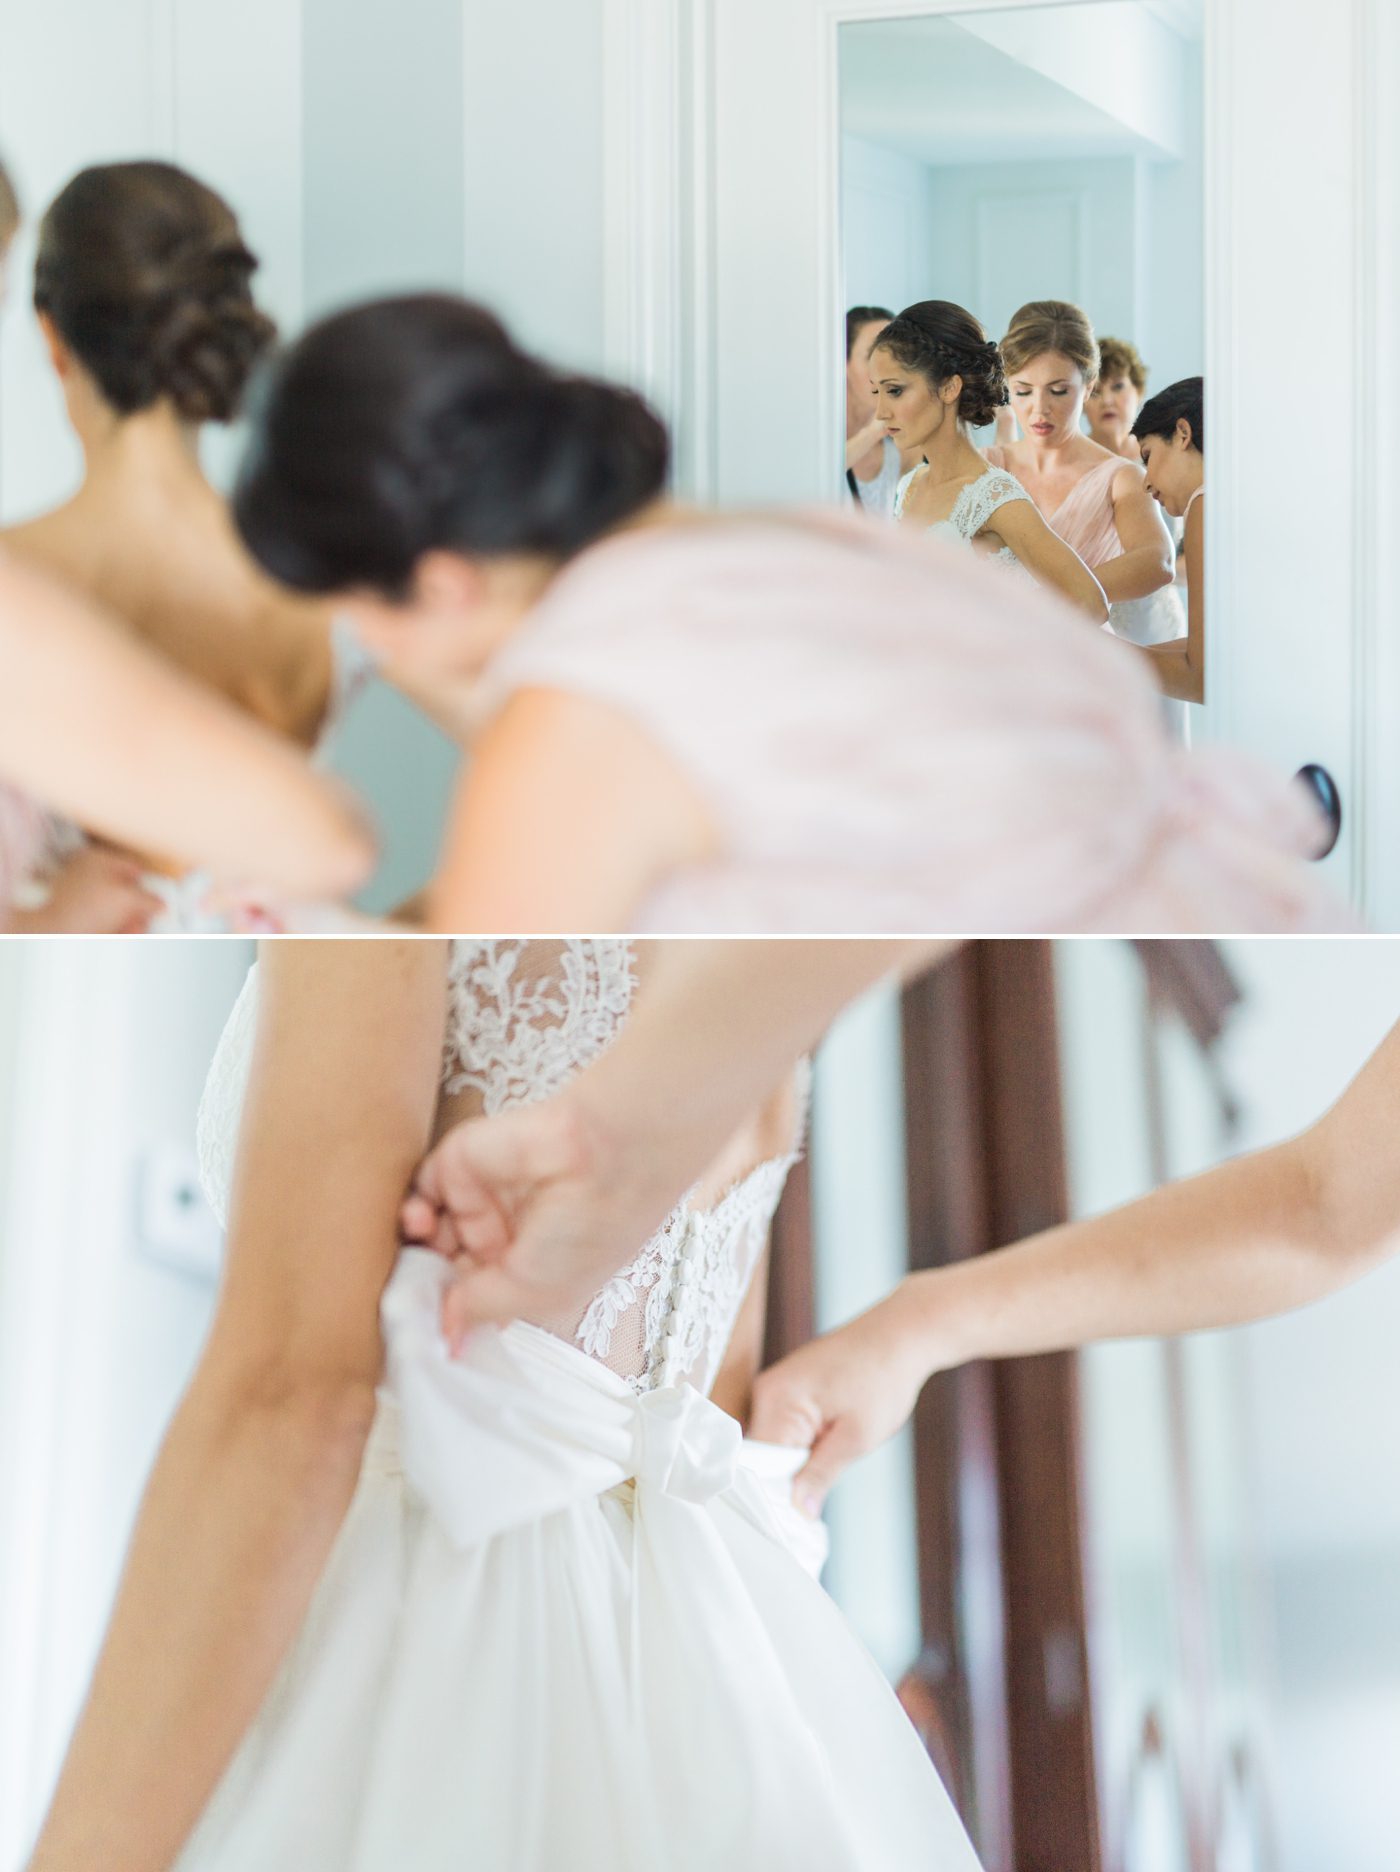 Bridesmaids helping bride get dressed | Elegant William Aiken House Wedding Photos | Charleston SC wedding photographers Catherine Ann Photography